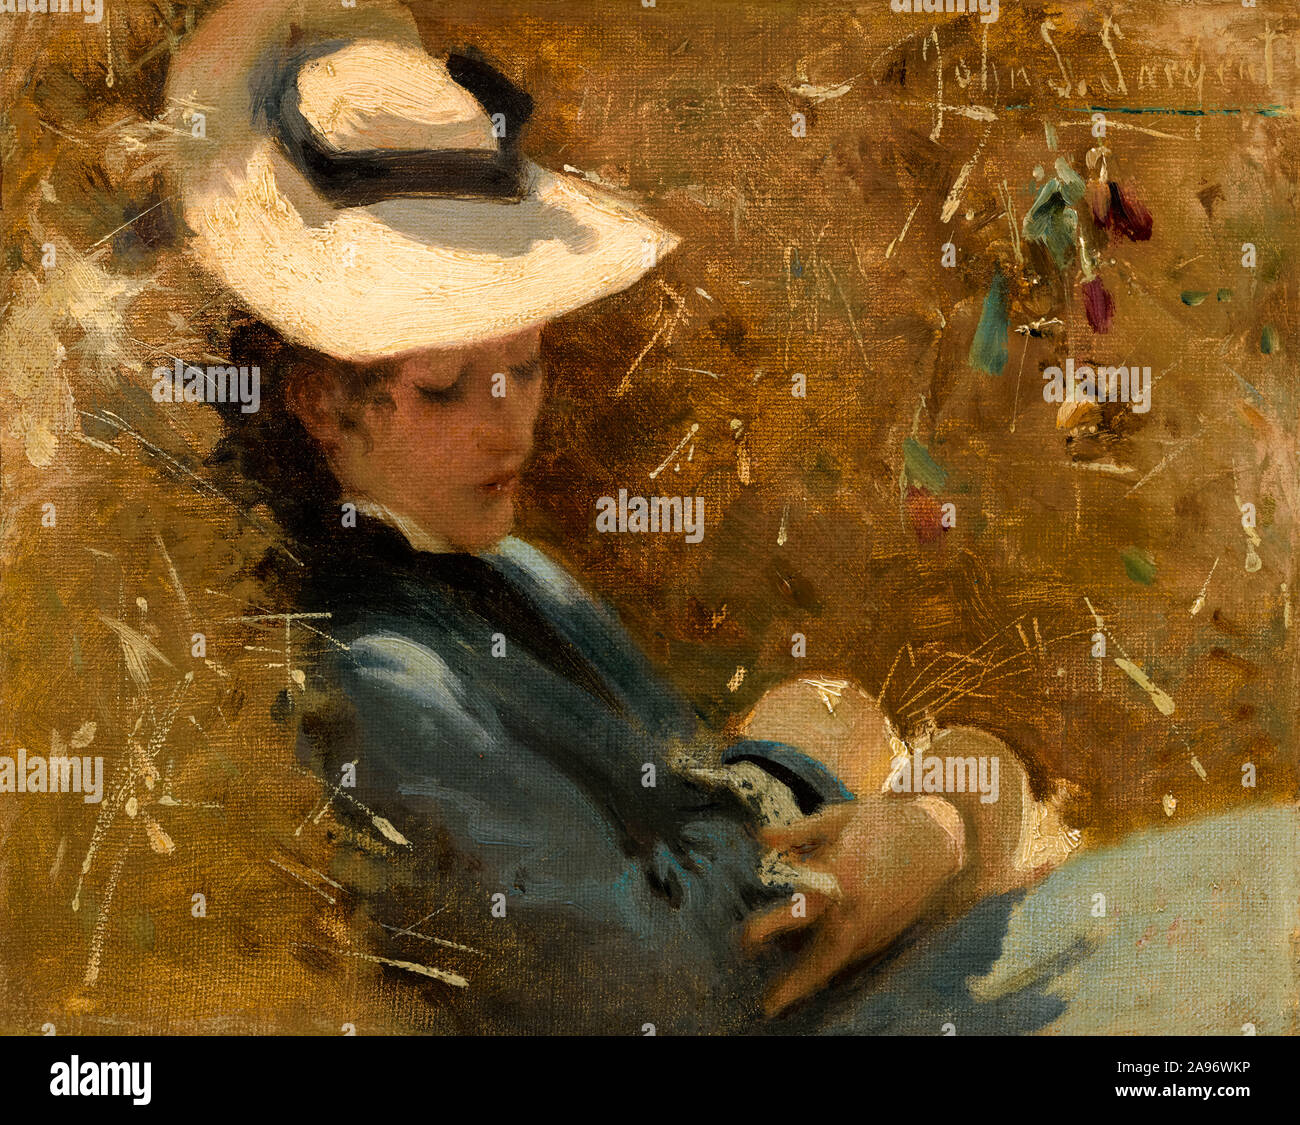 John Singer Sargent, le repos, la peinture, vers 1875 Banque D'Images